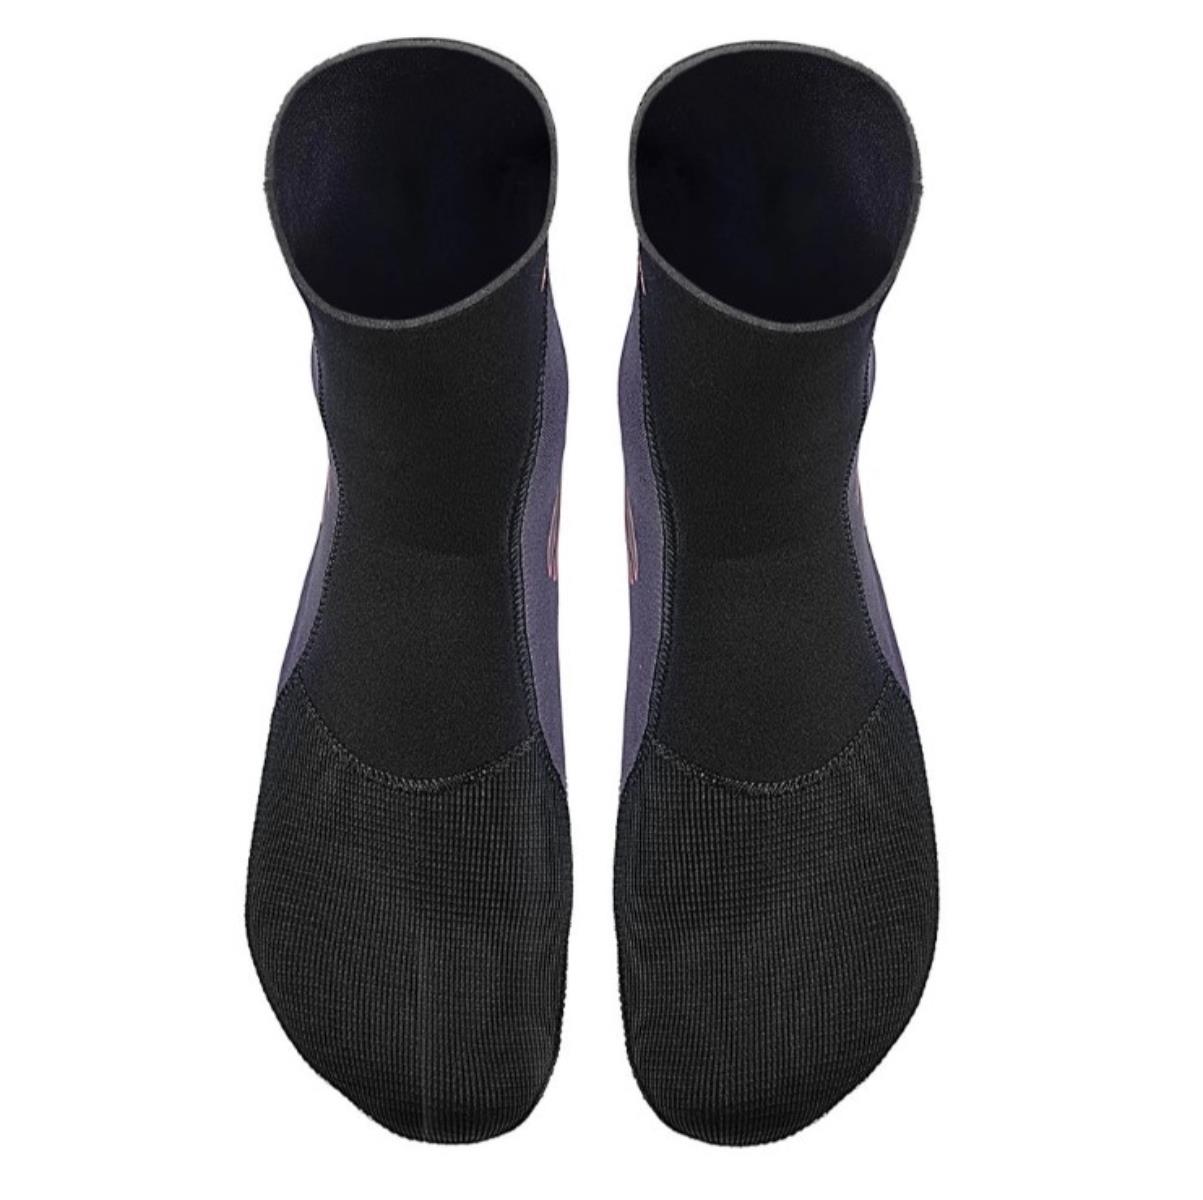 Zero Socks 1.5 mm Calzari Neoprene Apnea